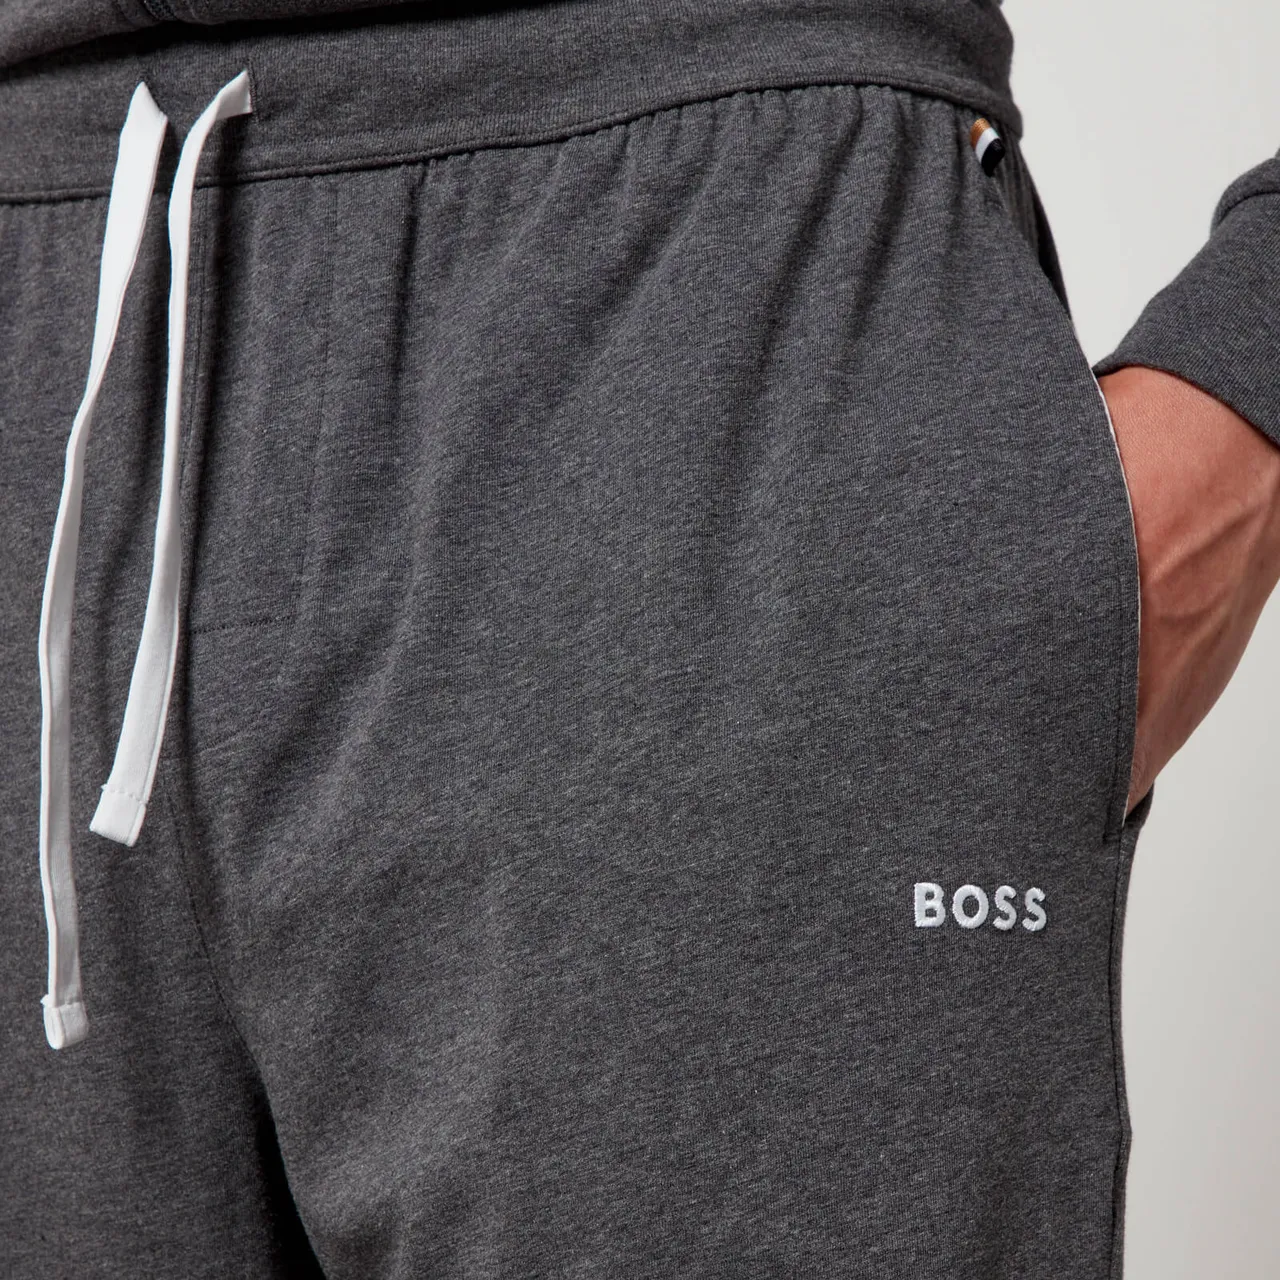 BOSS Bodywear Mix & Match Cotton-Blend Jersey Joggers